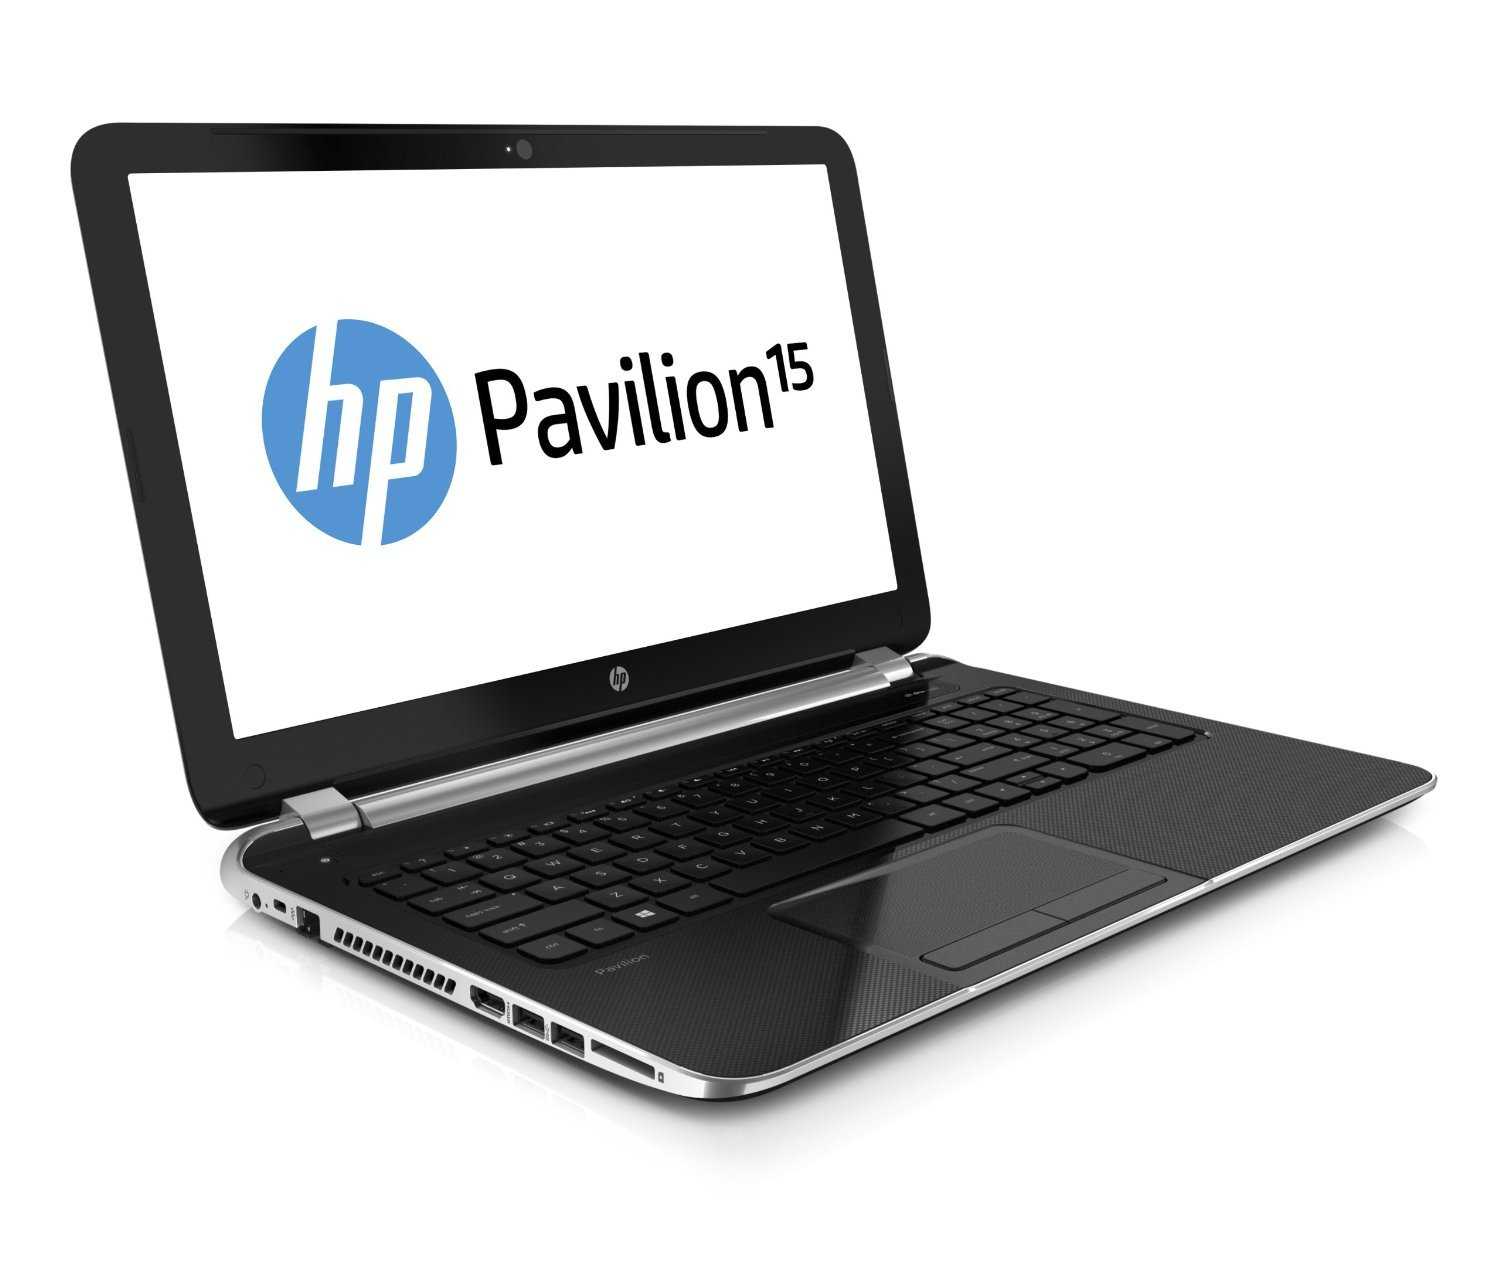 Ноутбук HP Pavilion 15-n089sr (F4U29EA) - подробные характеристики обзоры видео фото Цены в интернет-магазинах где можно купить ноутбук HP Pavilion 15-n089sr (F4U29EA)